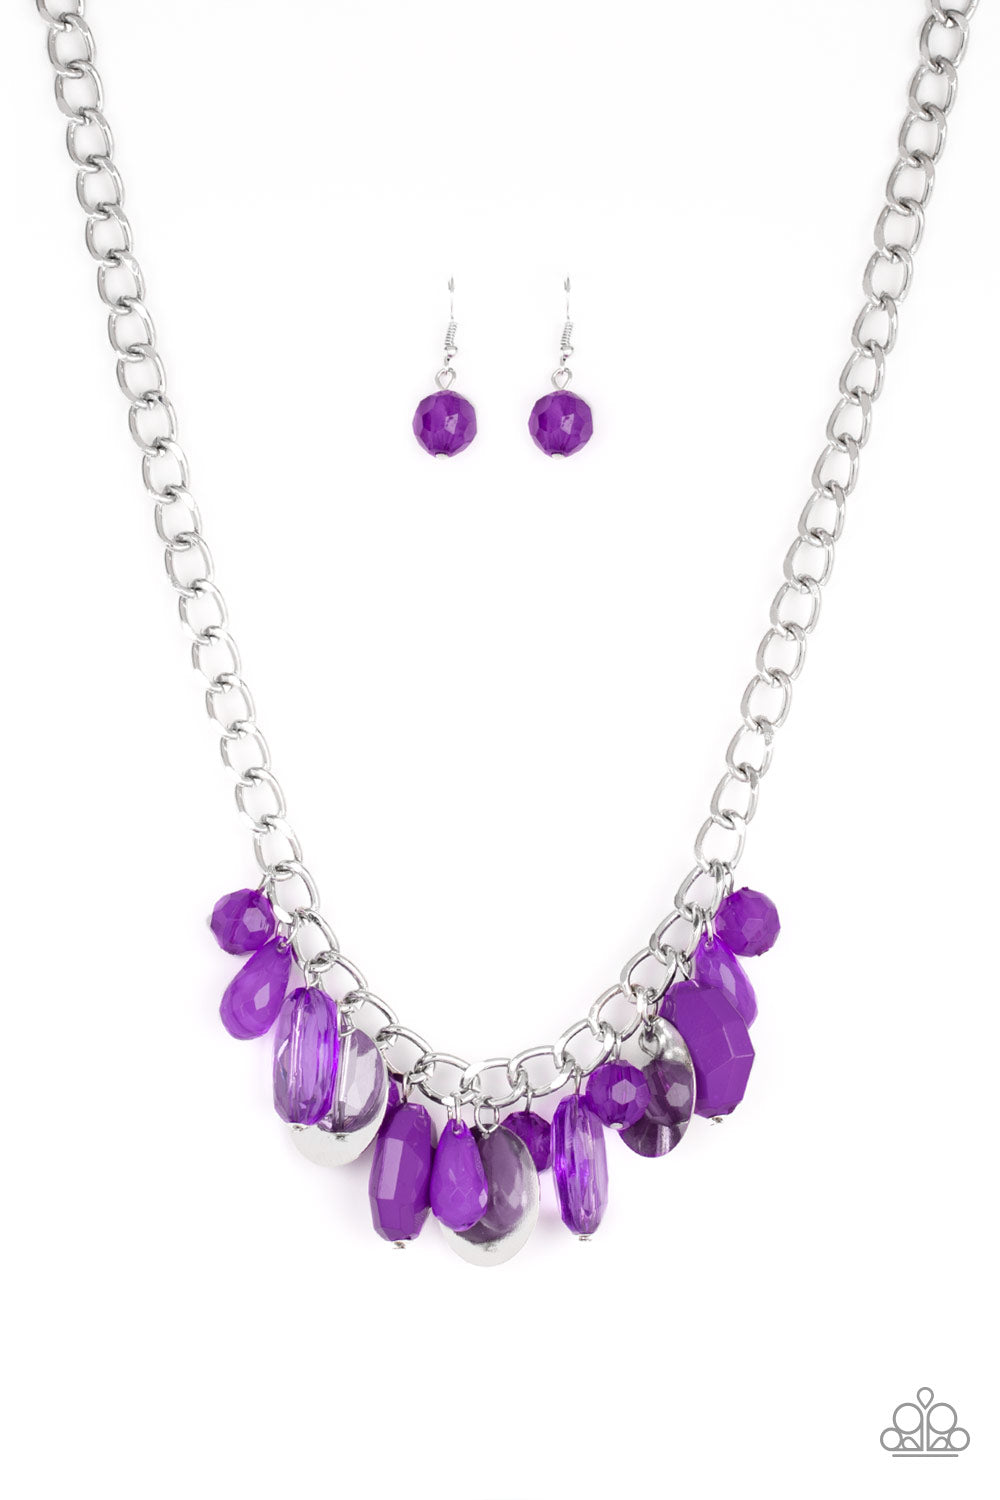 five-dollar-jewelry-treasure-shore-purple-necklace-paparazzi-accessories